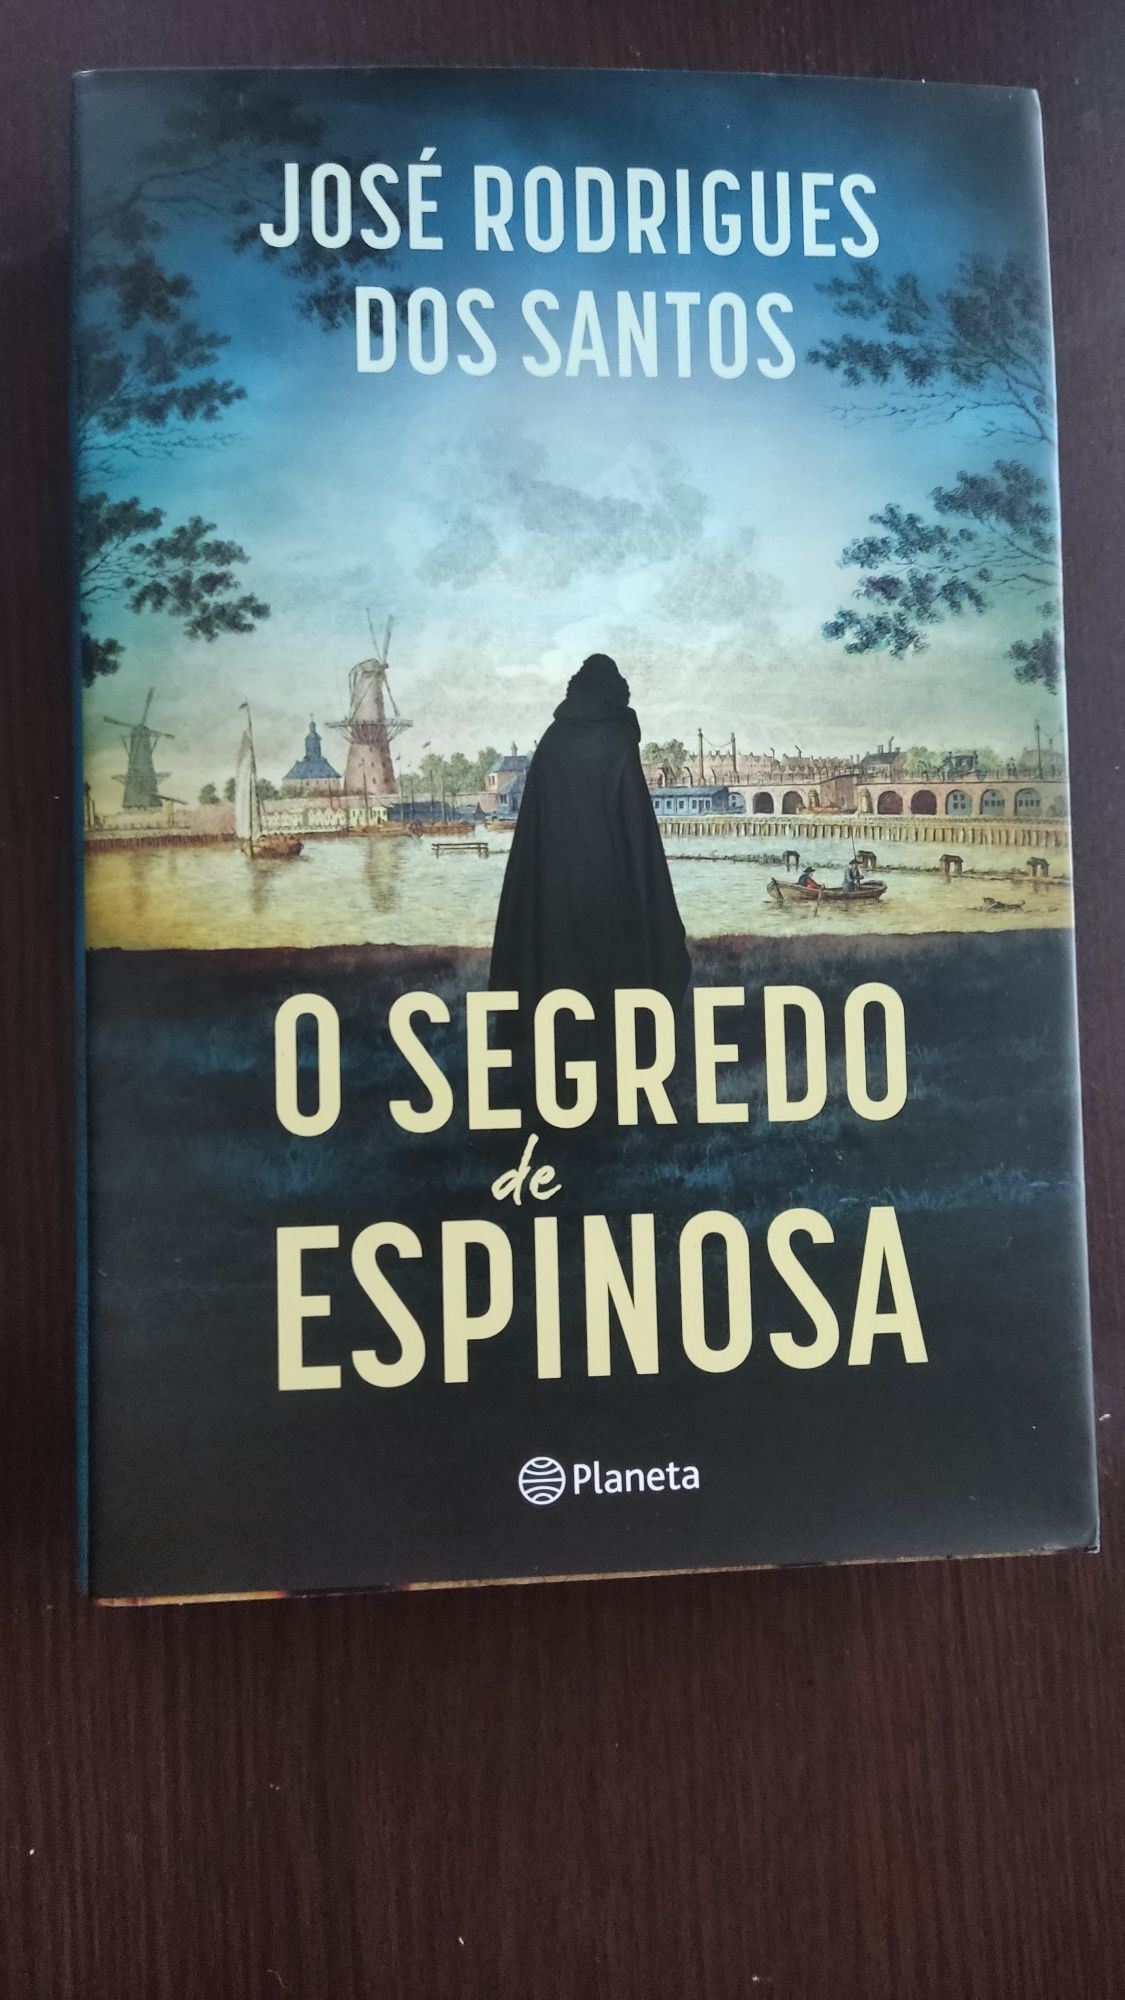 Livro "O segredo de Espinosa"